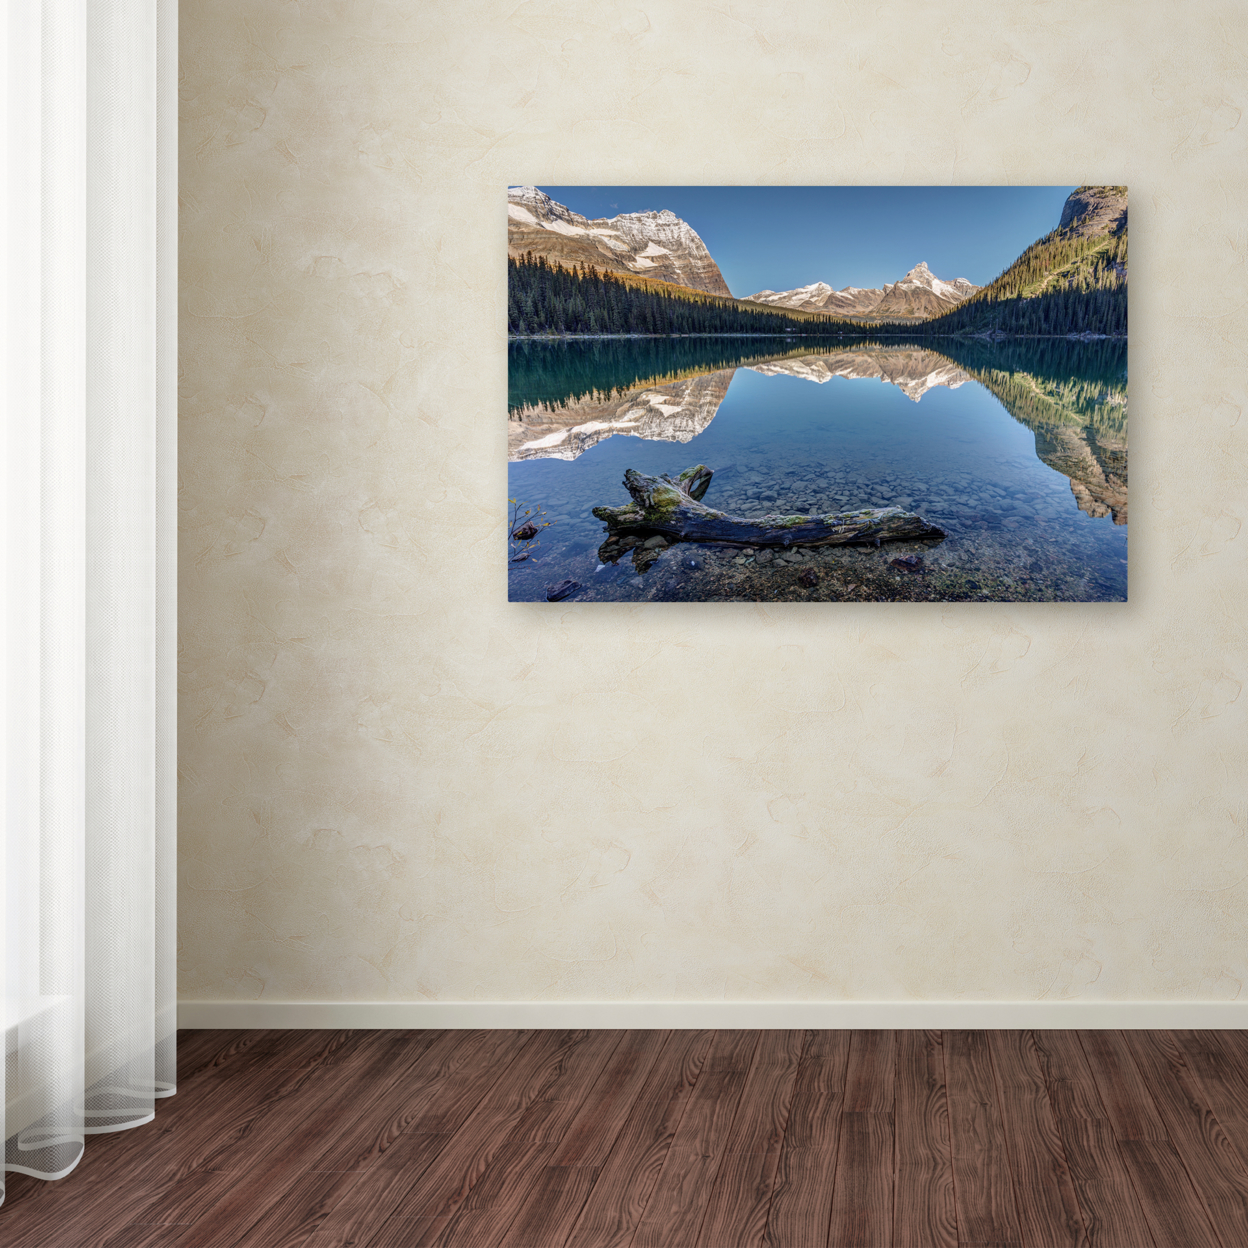 Pierre Leclerc 'Lake O'Hara Reflection' Canvas Art 16 X 24